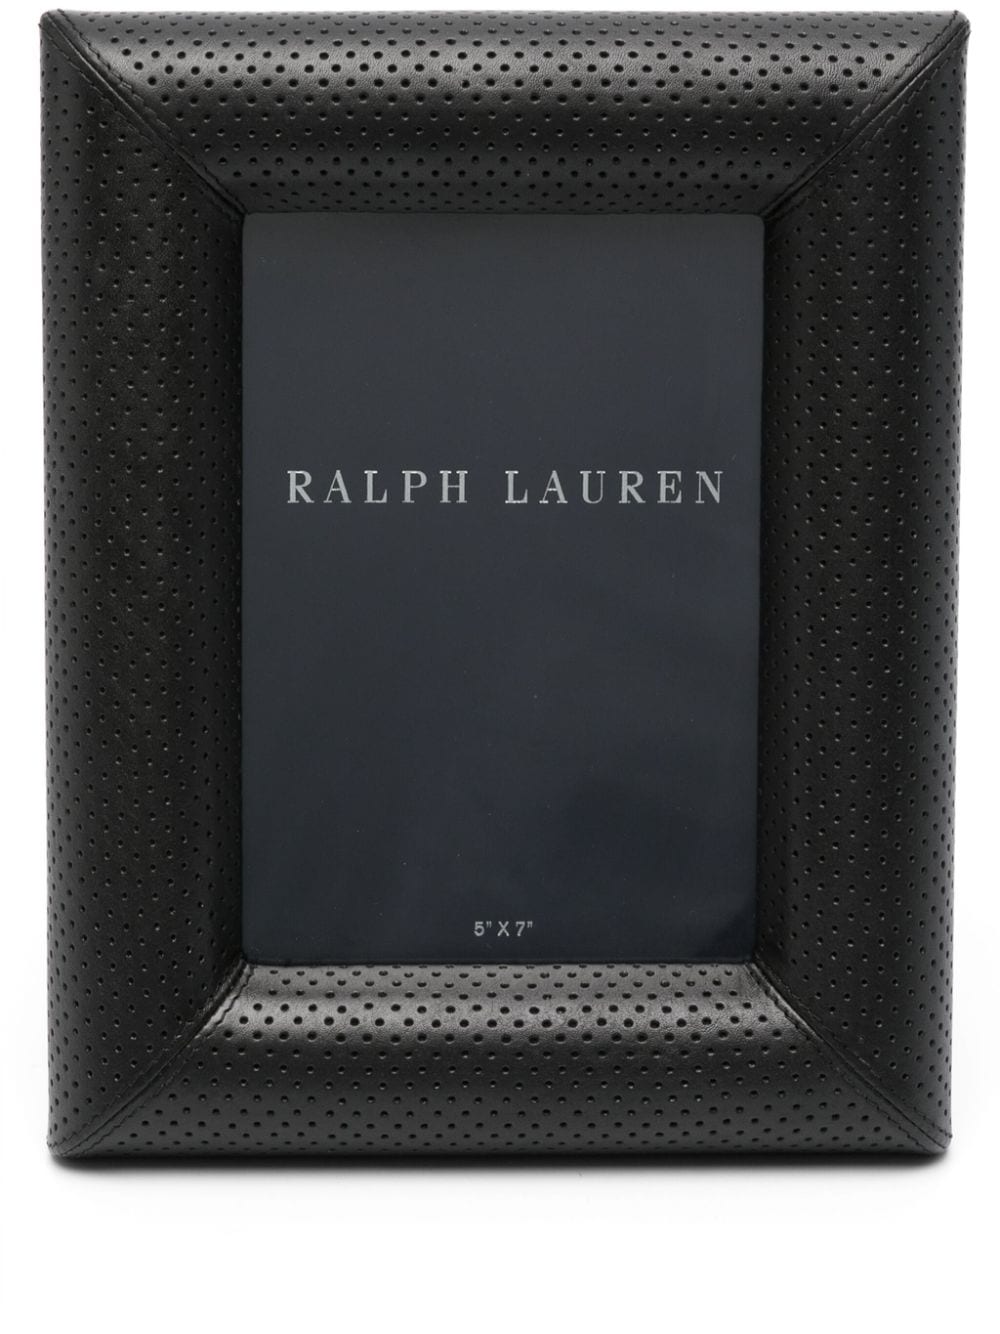 Ralph Lauren Home Luxe photo frame 8cm x 10cm - Silber Durham leather frame - Schwarz